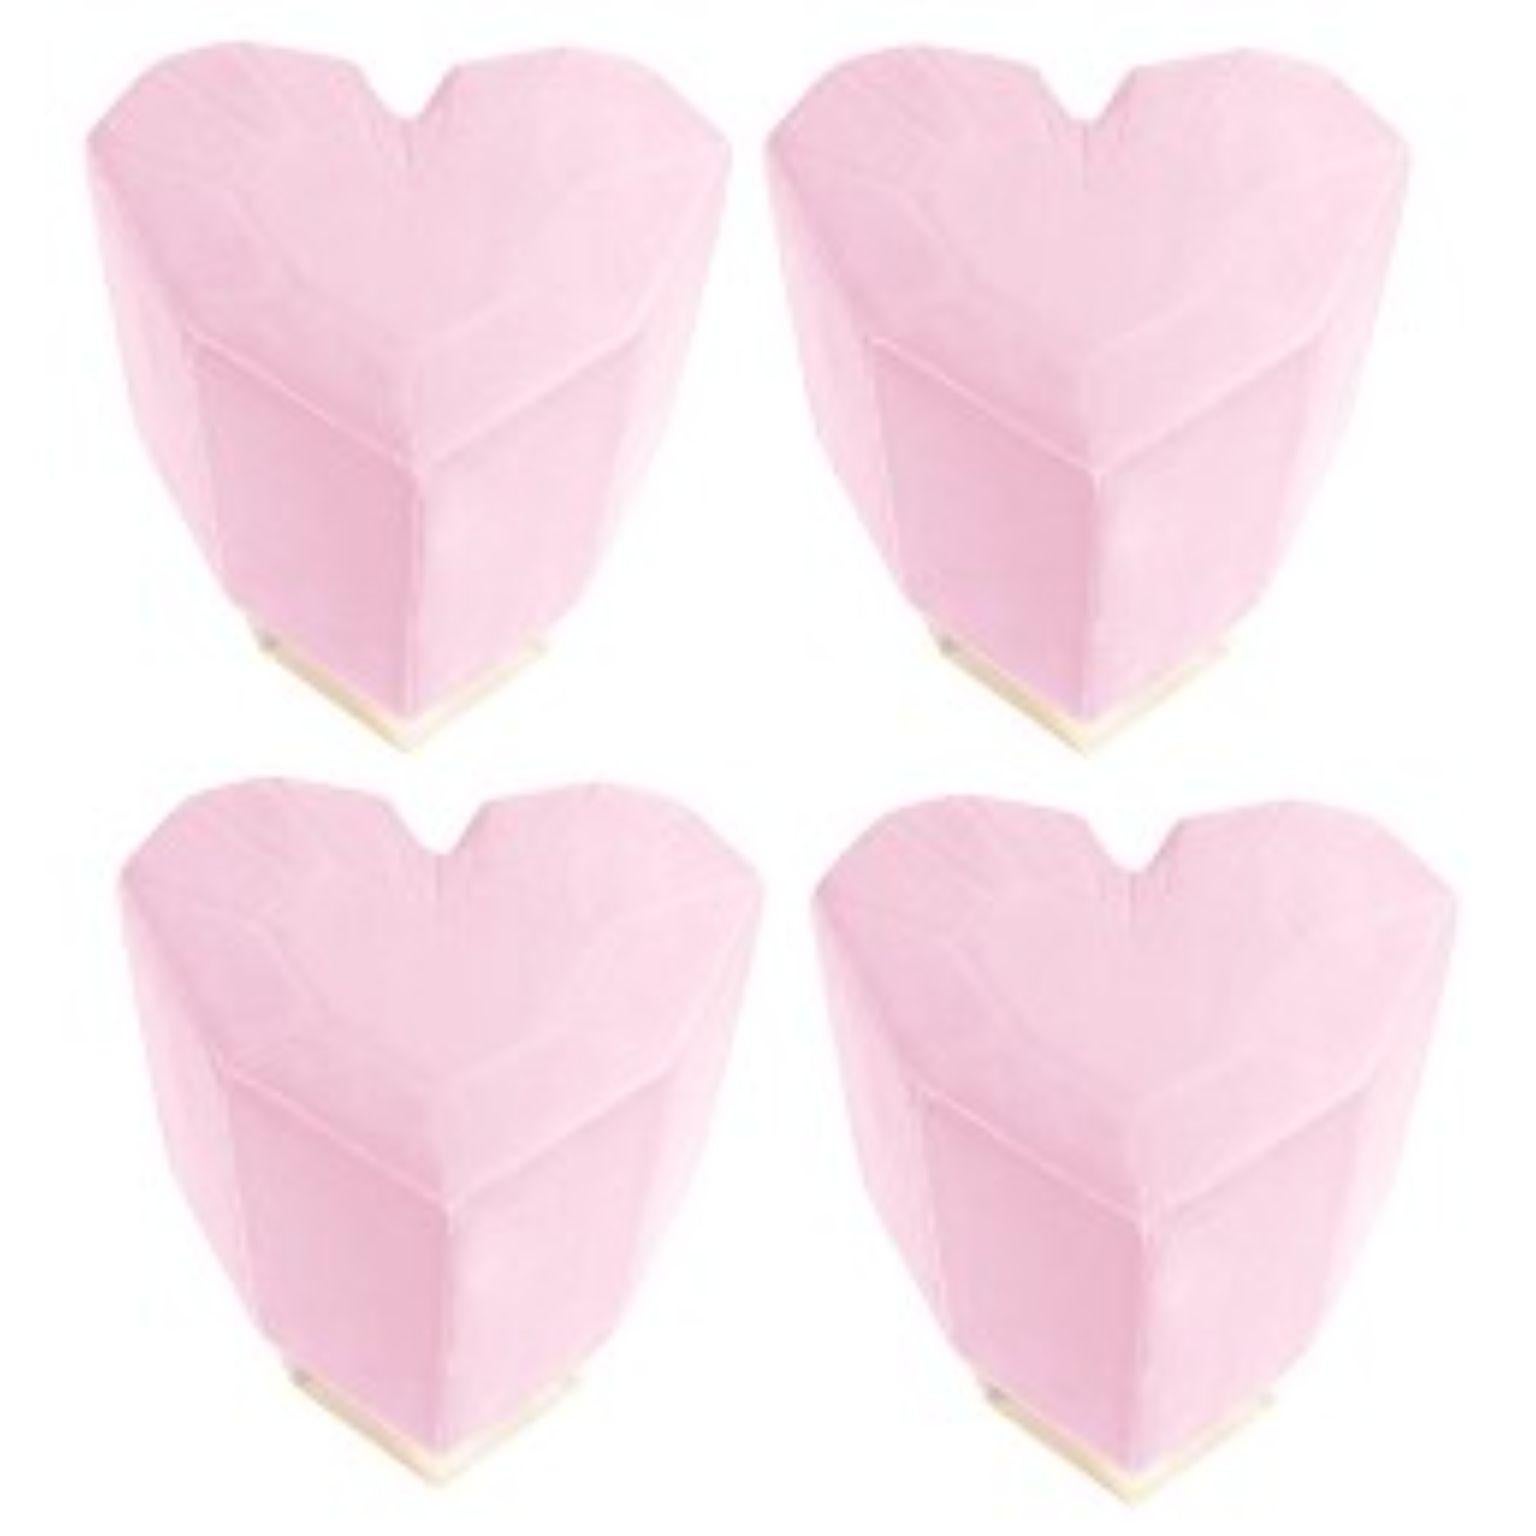 Ensemble de 4 tabourets Queen Heart rose clair par Royal Stranger
Dimensions : 46 x 49 x 43 cm
Différentes couleurs et finitions de rembourrage sont disponibles. Laiton, cuivre ou acier inoxydable en finition polie ou brossée.
MATERIAL : revêtement